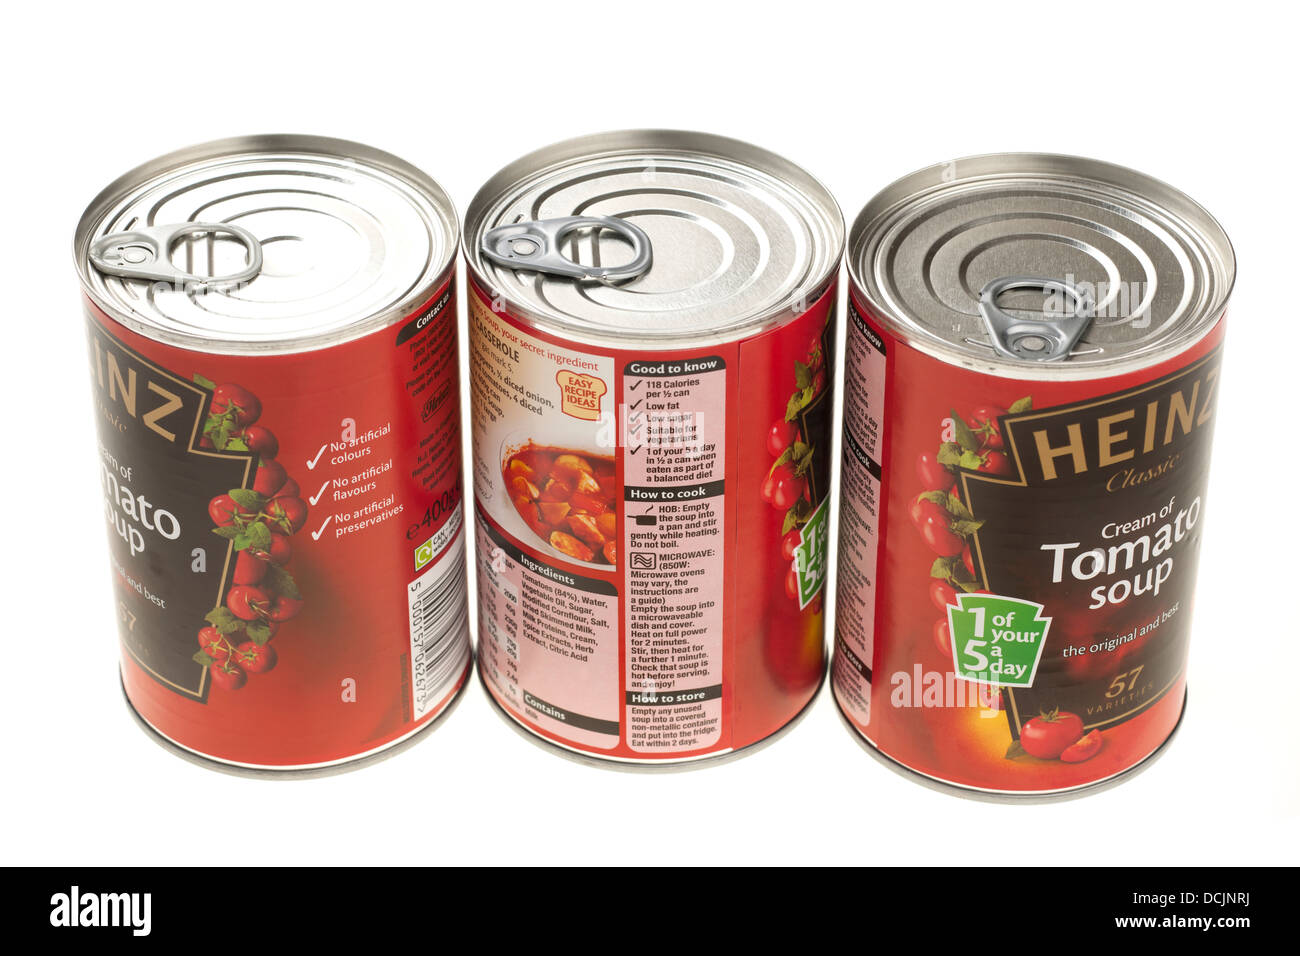 Trois boîtes de soupe de tomate Heinz Banque D'Images